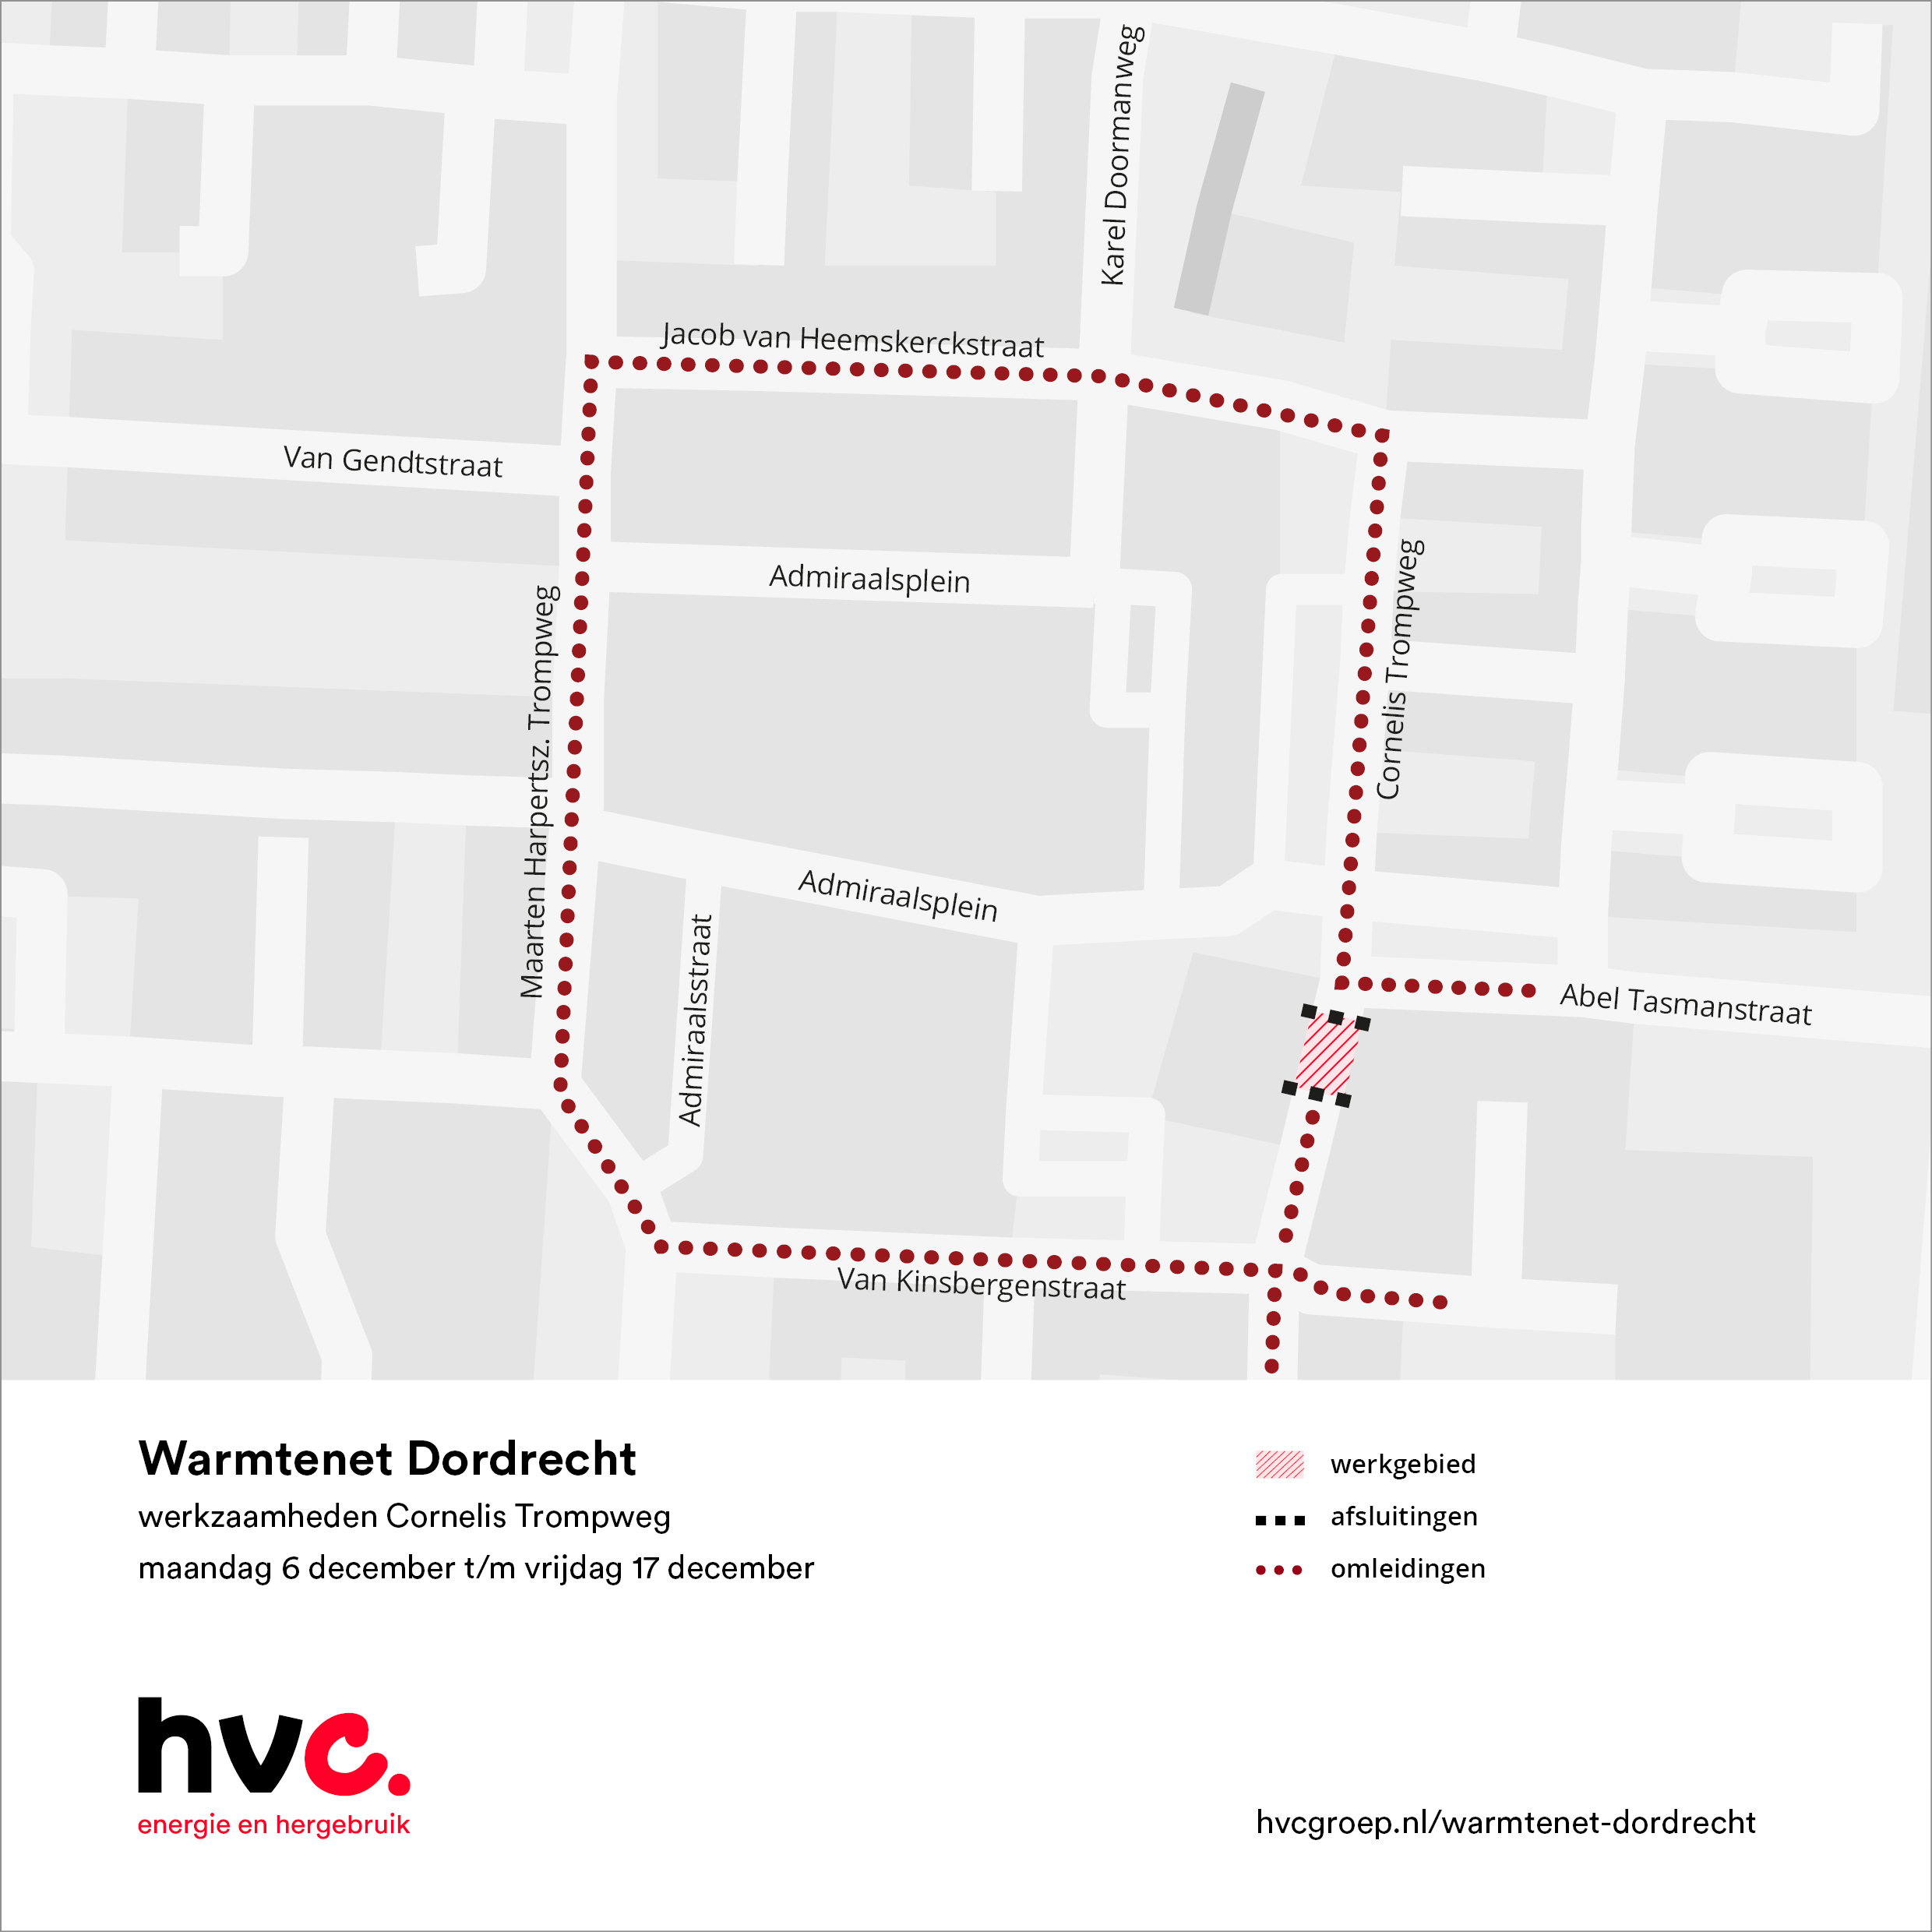 Plattegrond met daarop de locatie van de werkzaamheden in Cornelis Trompweg in Dordrecht